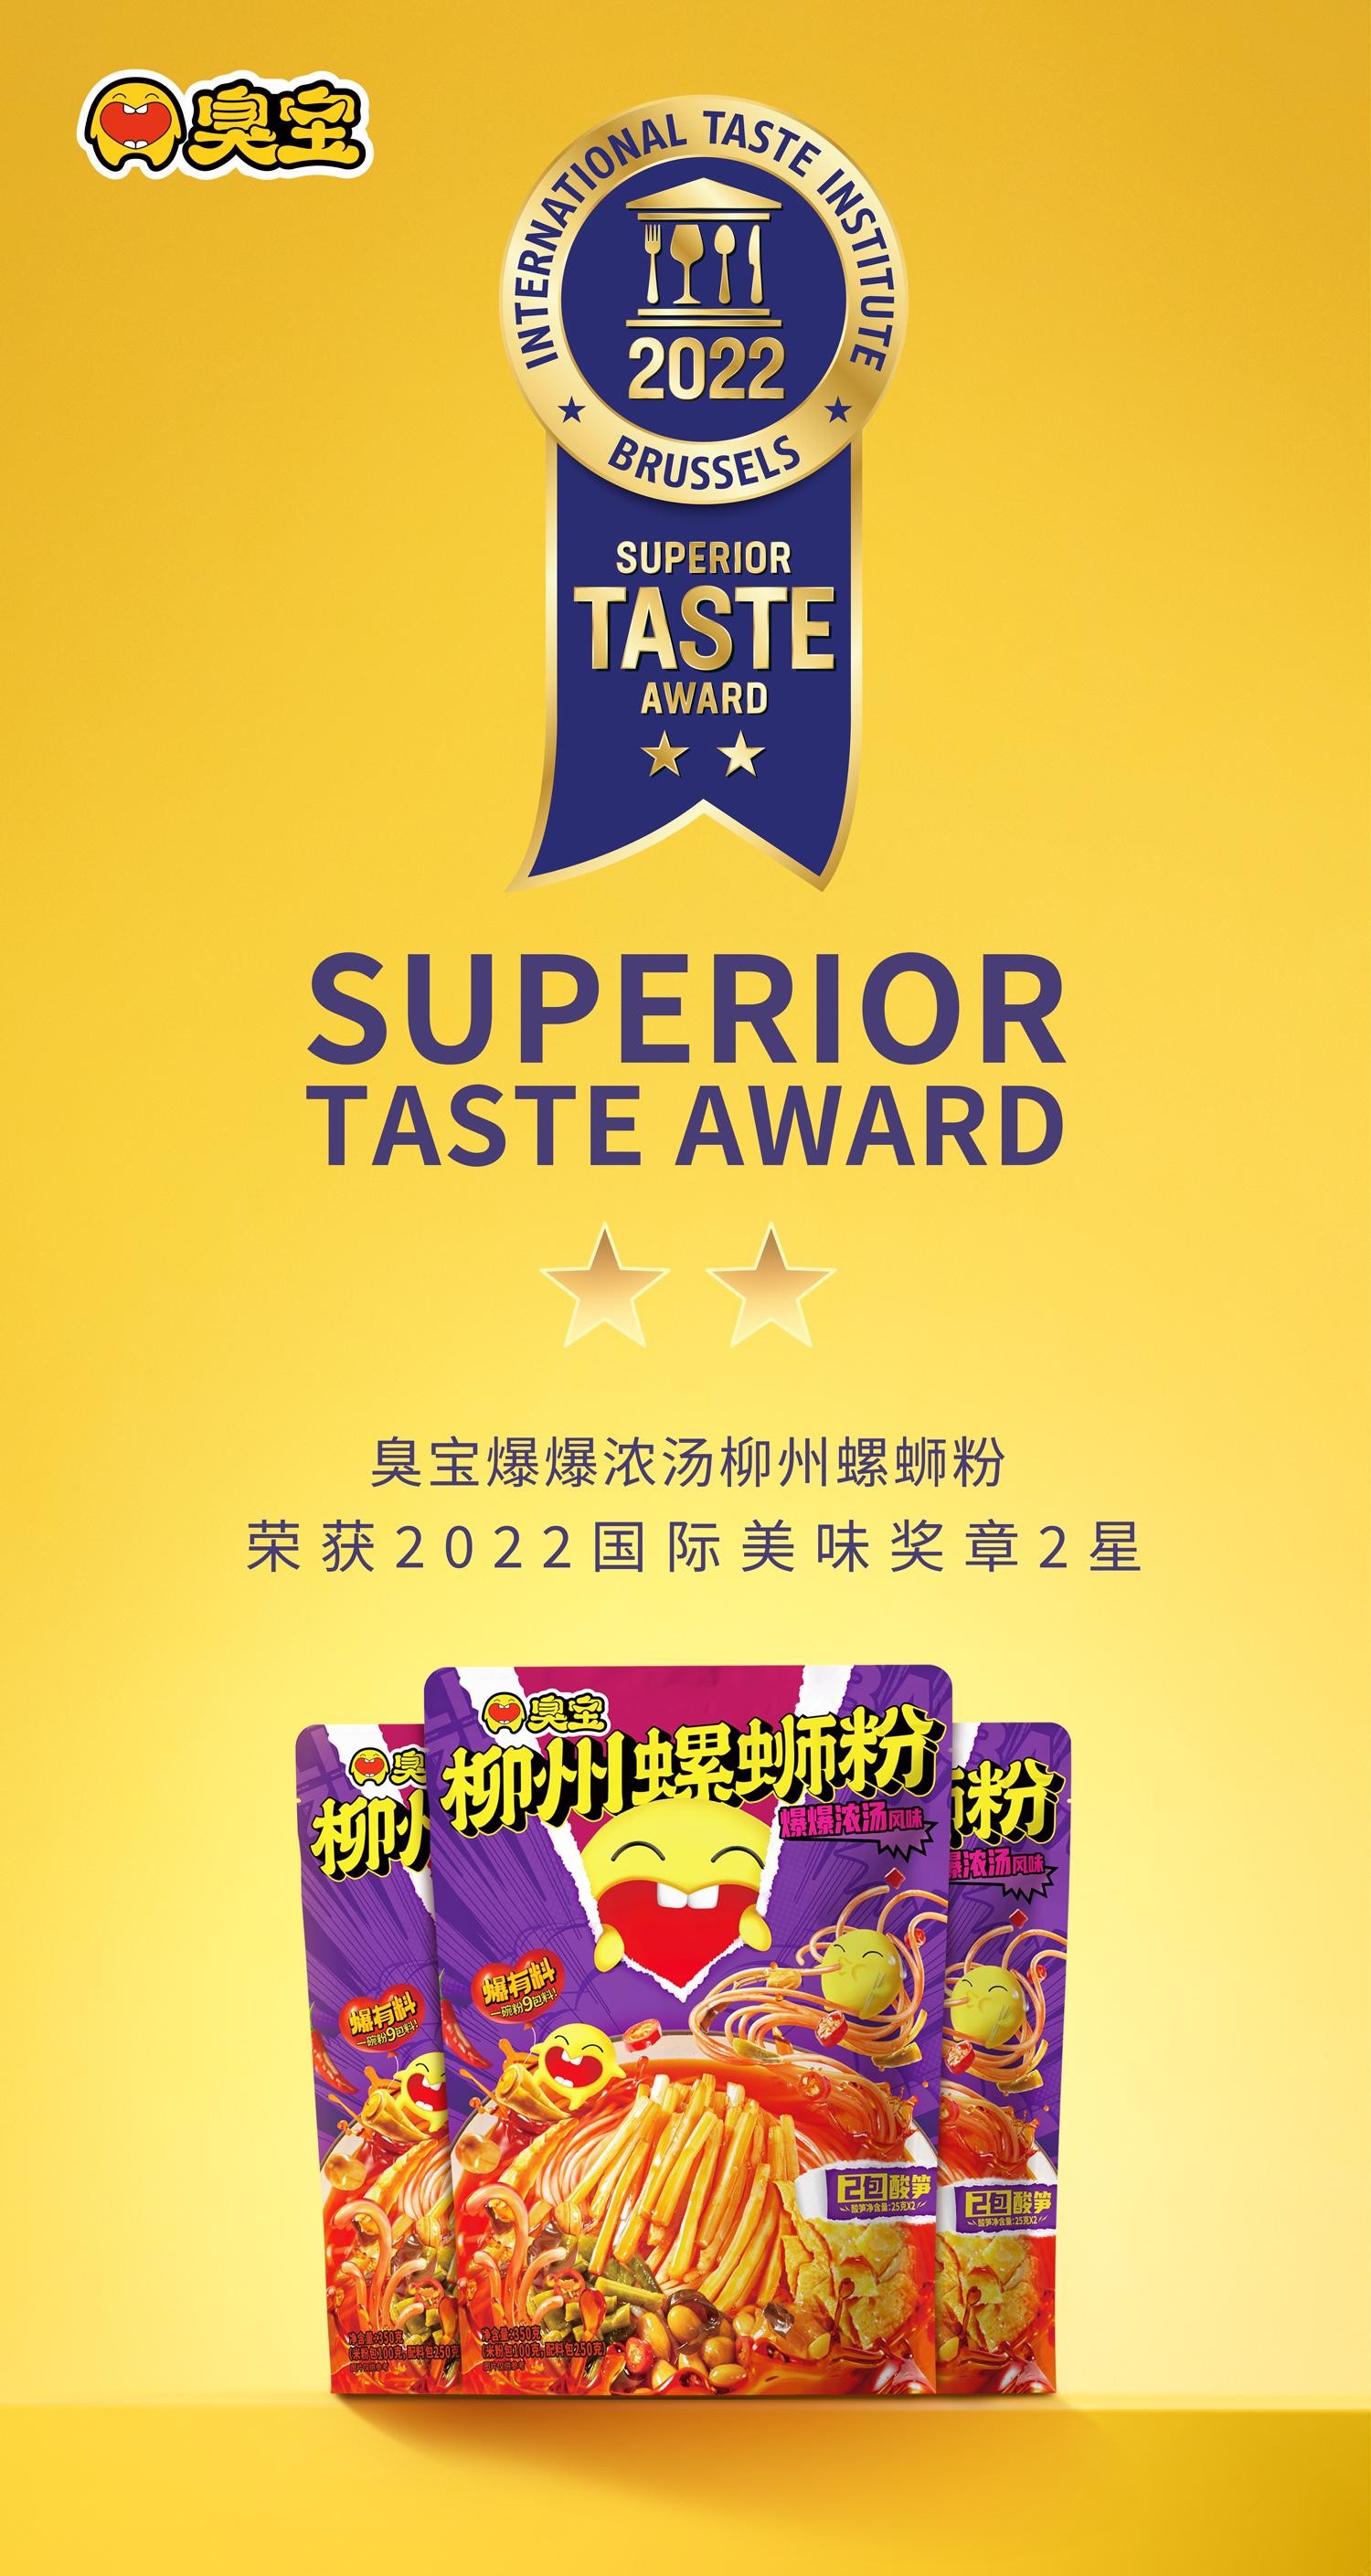 螺蛳粉天花板臭宝成为首个获得2星国际美味奖章的螺蛳粉品牌